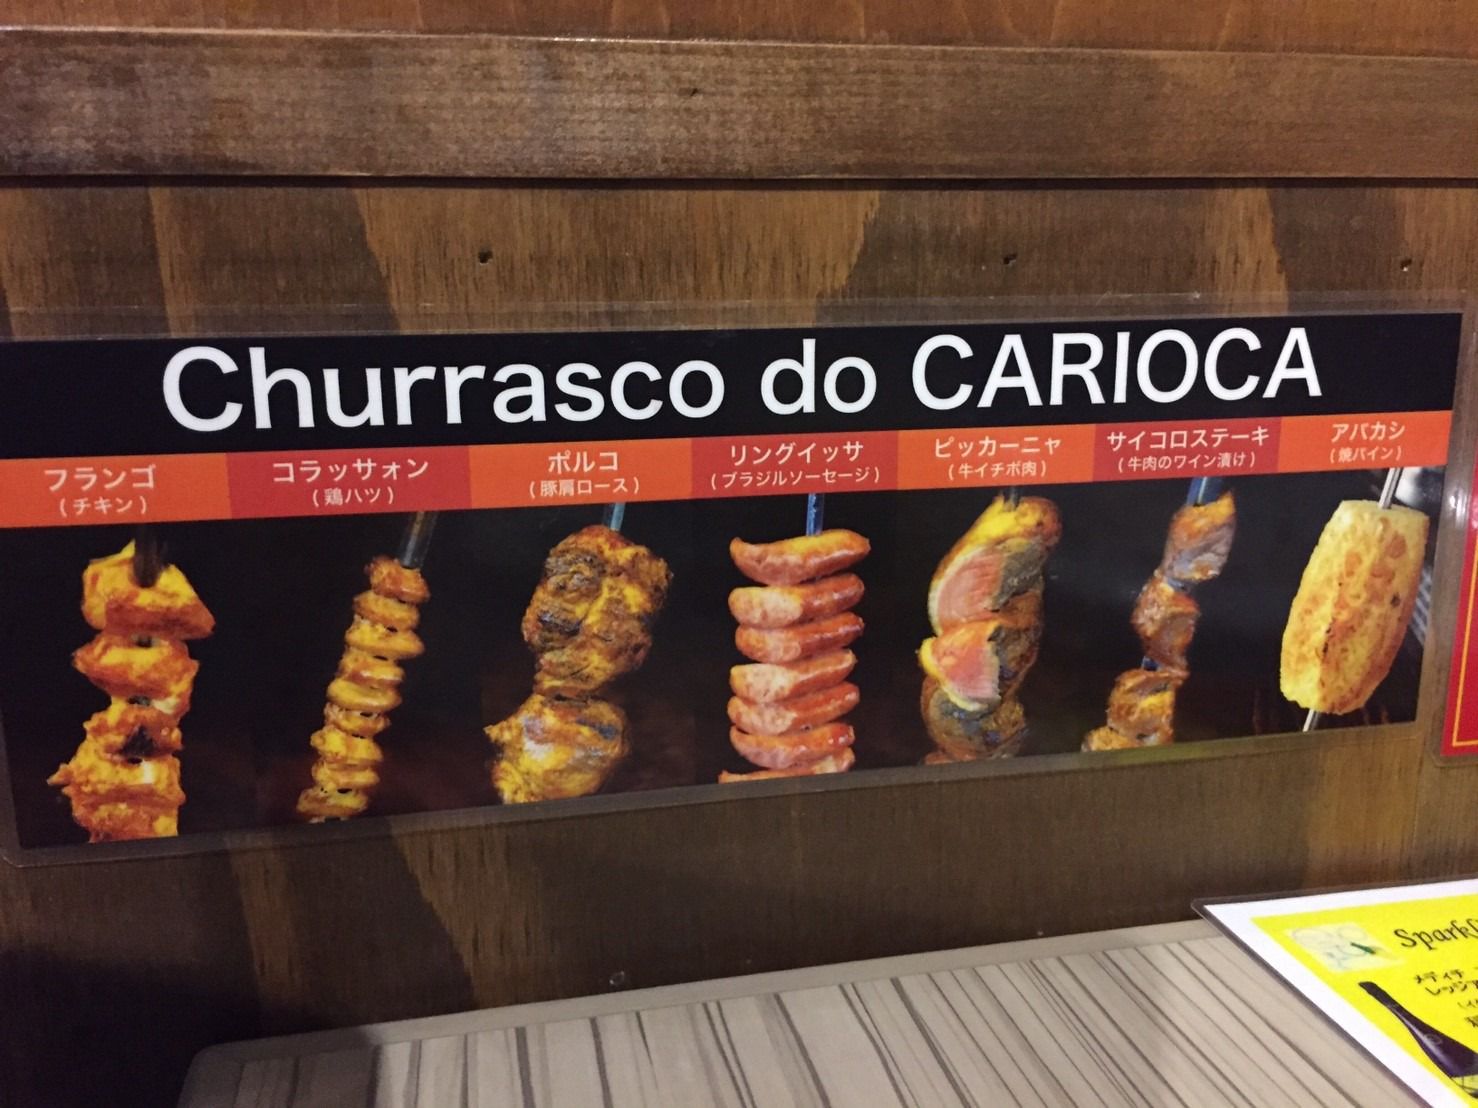 シュラスコ 世界のワイン Carioca カリオカ 名駅店の店舗情報 Instagrammers Gourmet